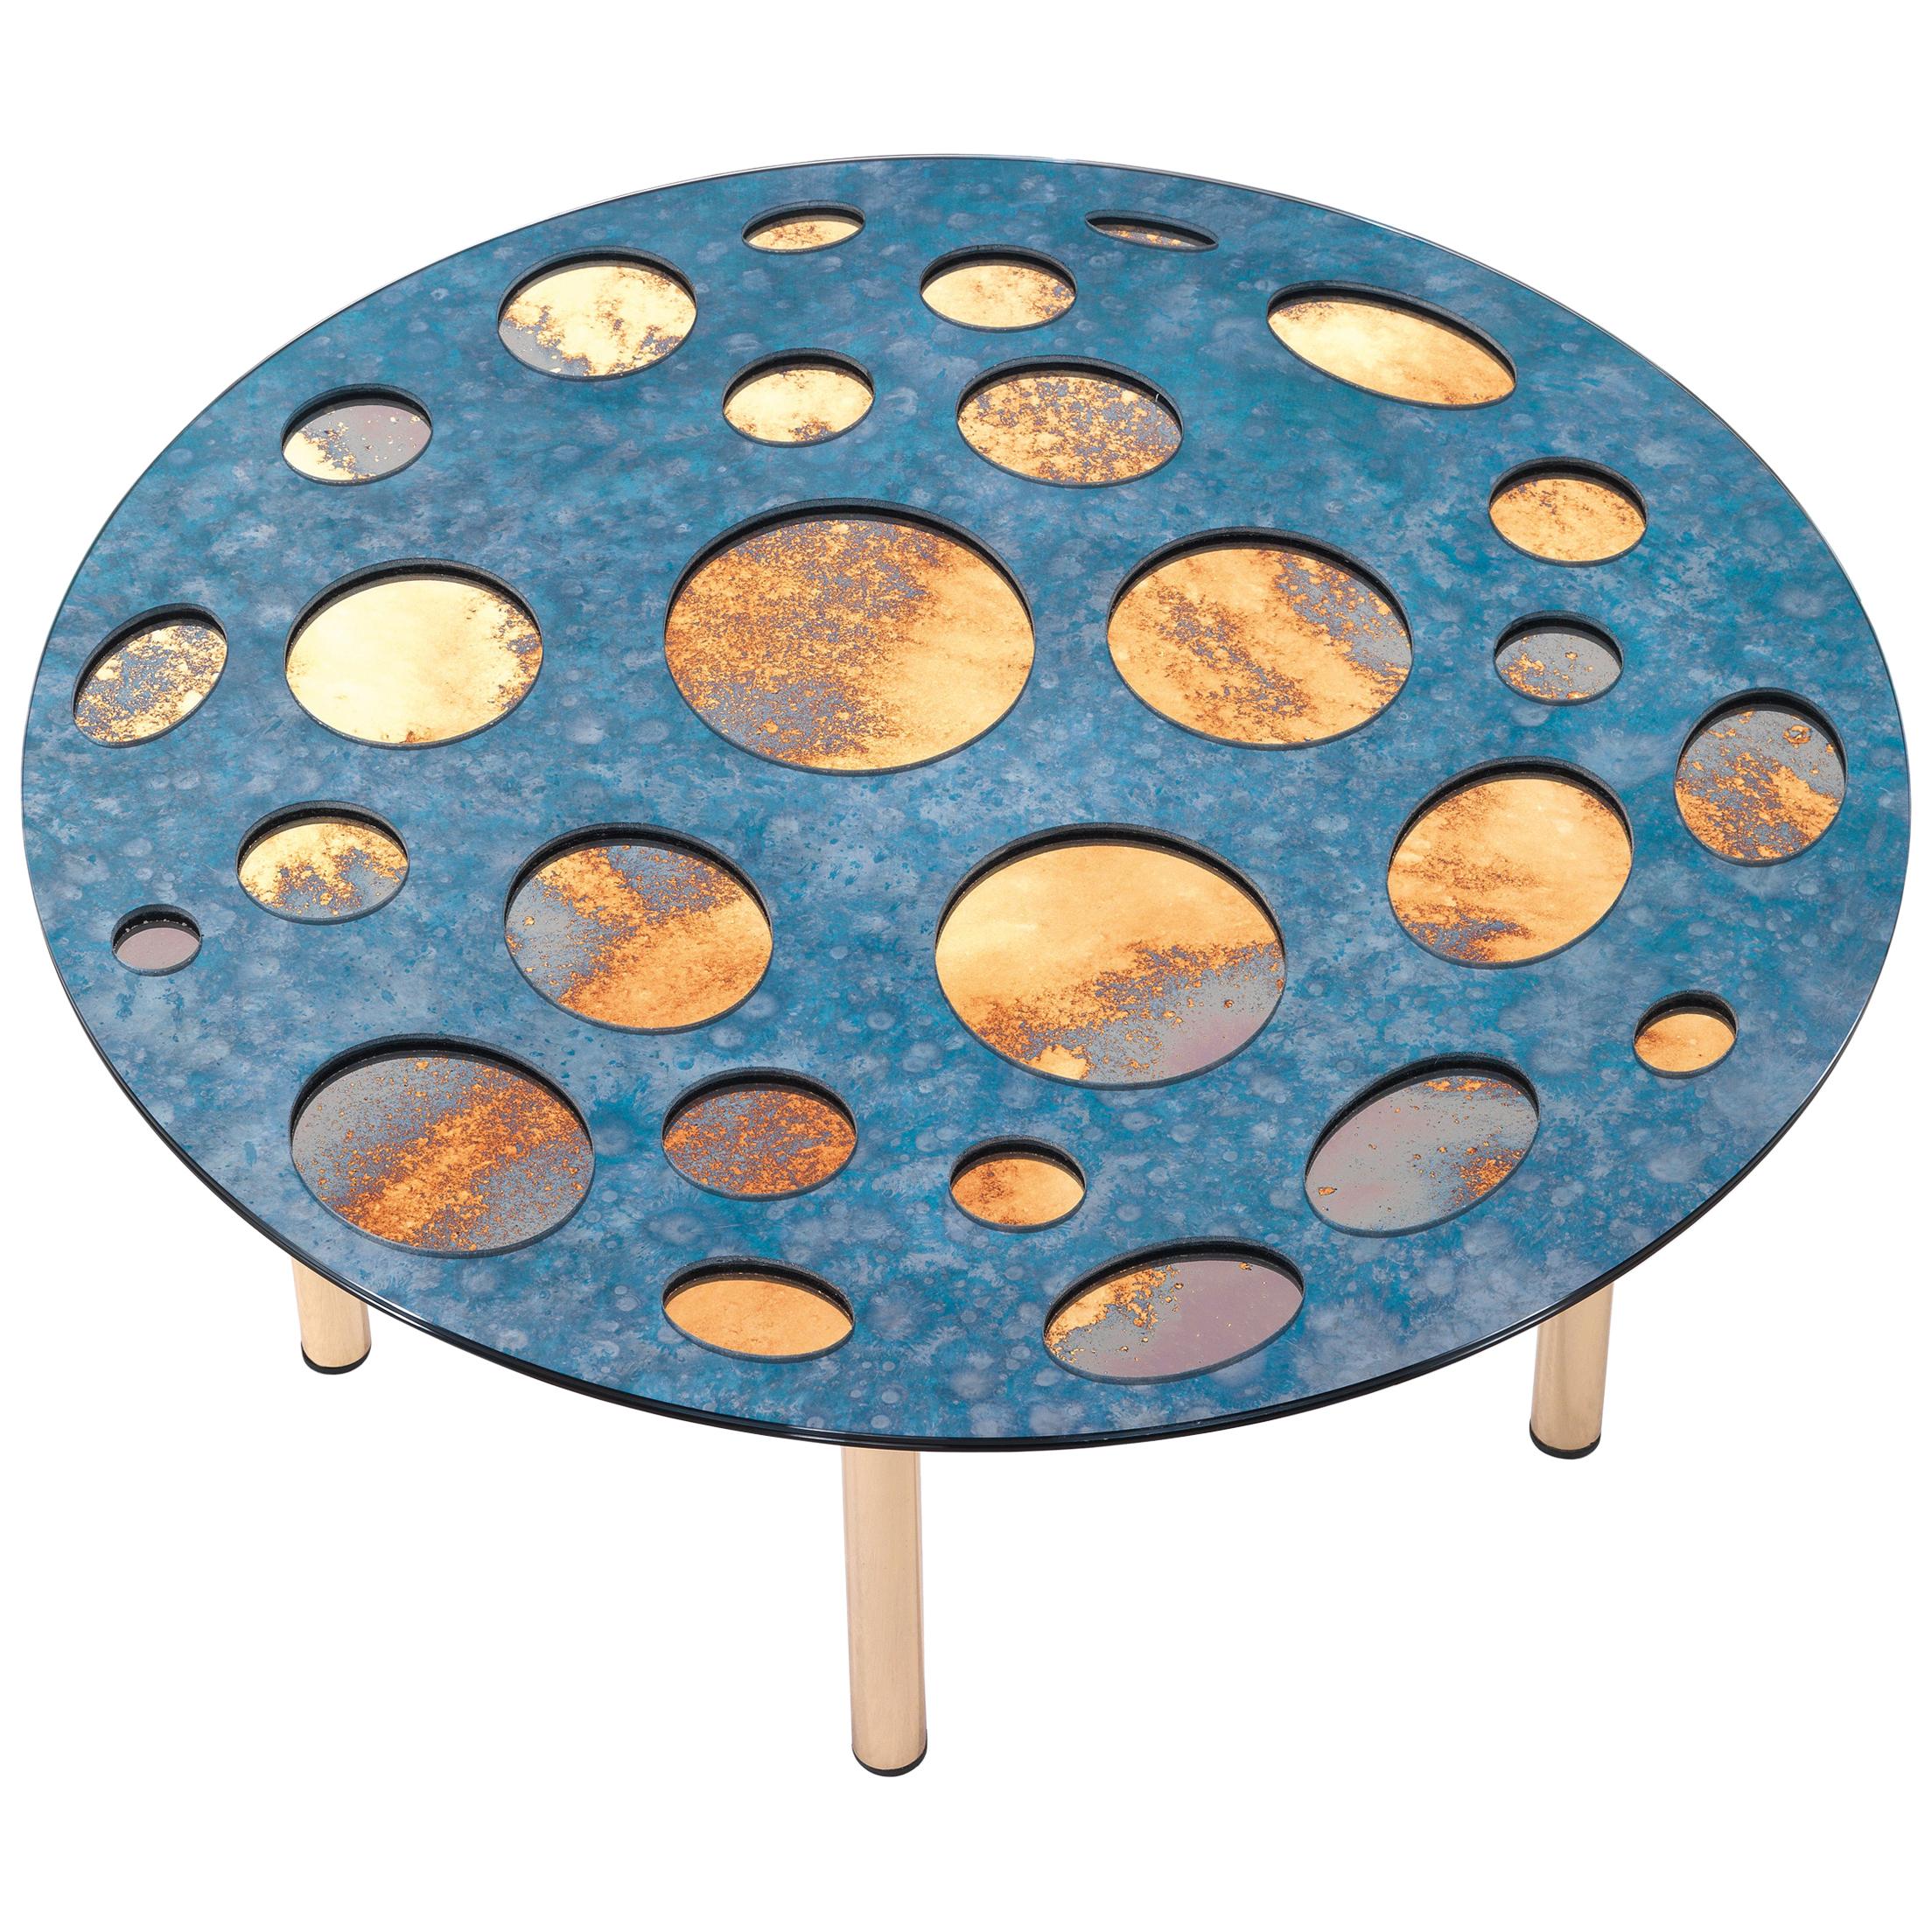 Petite table Venny du 21ème siècle en couches de miroirs décoratifs de Matteo Cibic